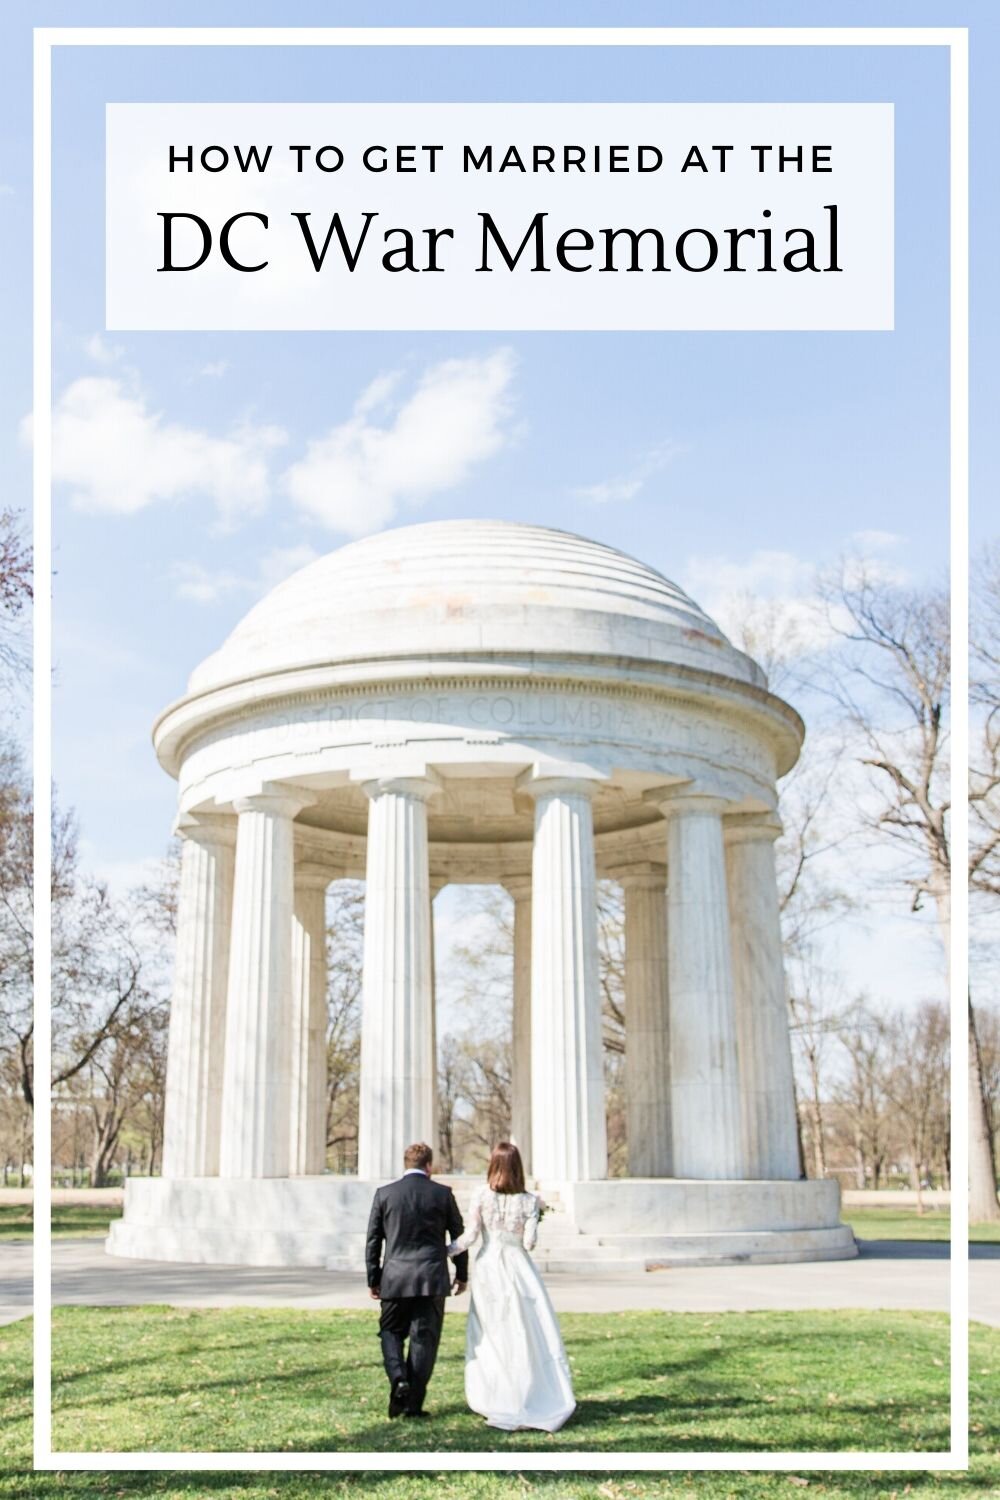 Intimate weddings at the DC War Memorial